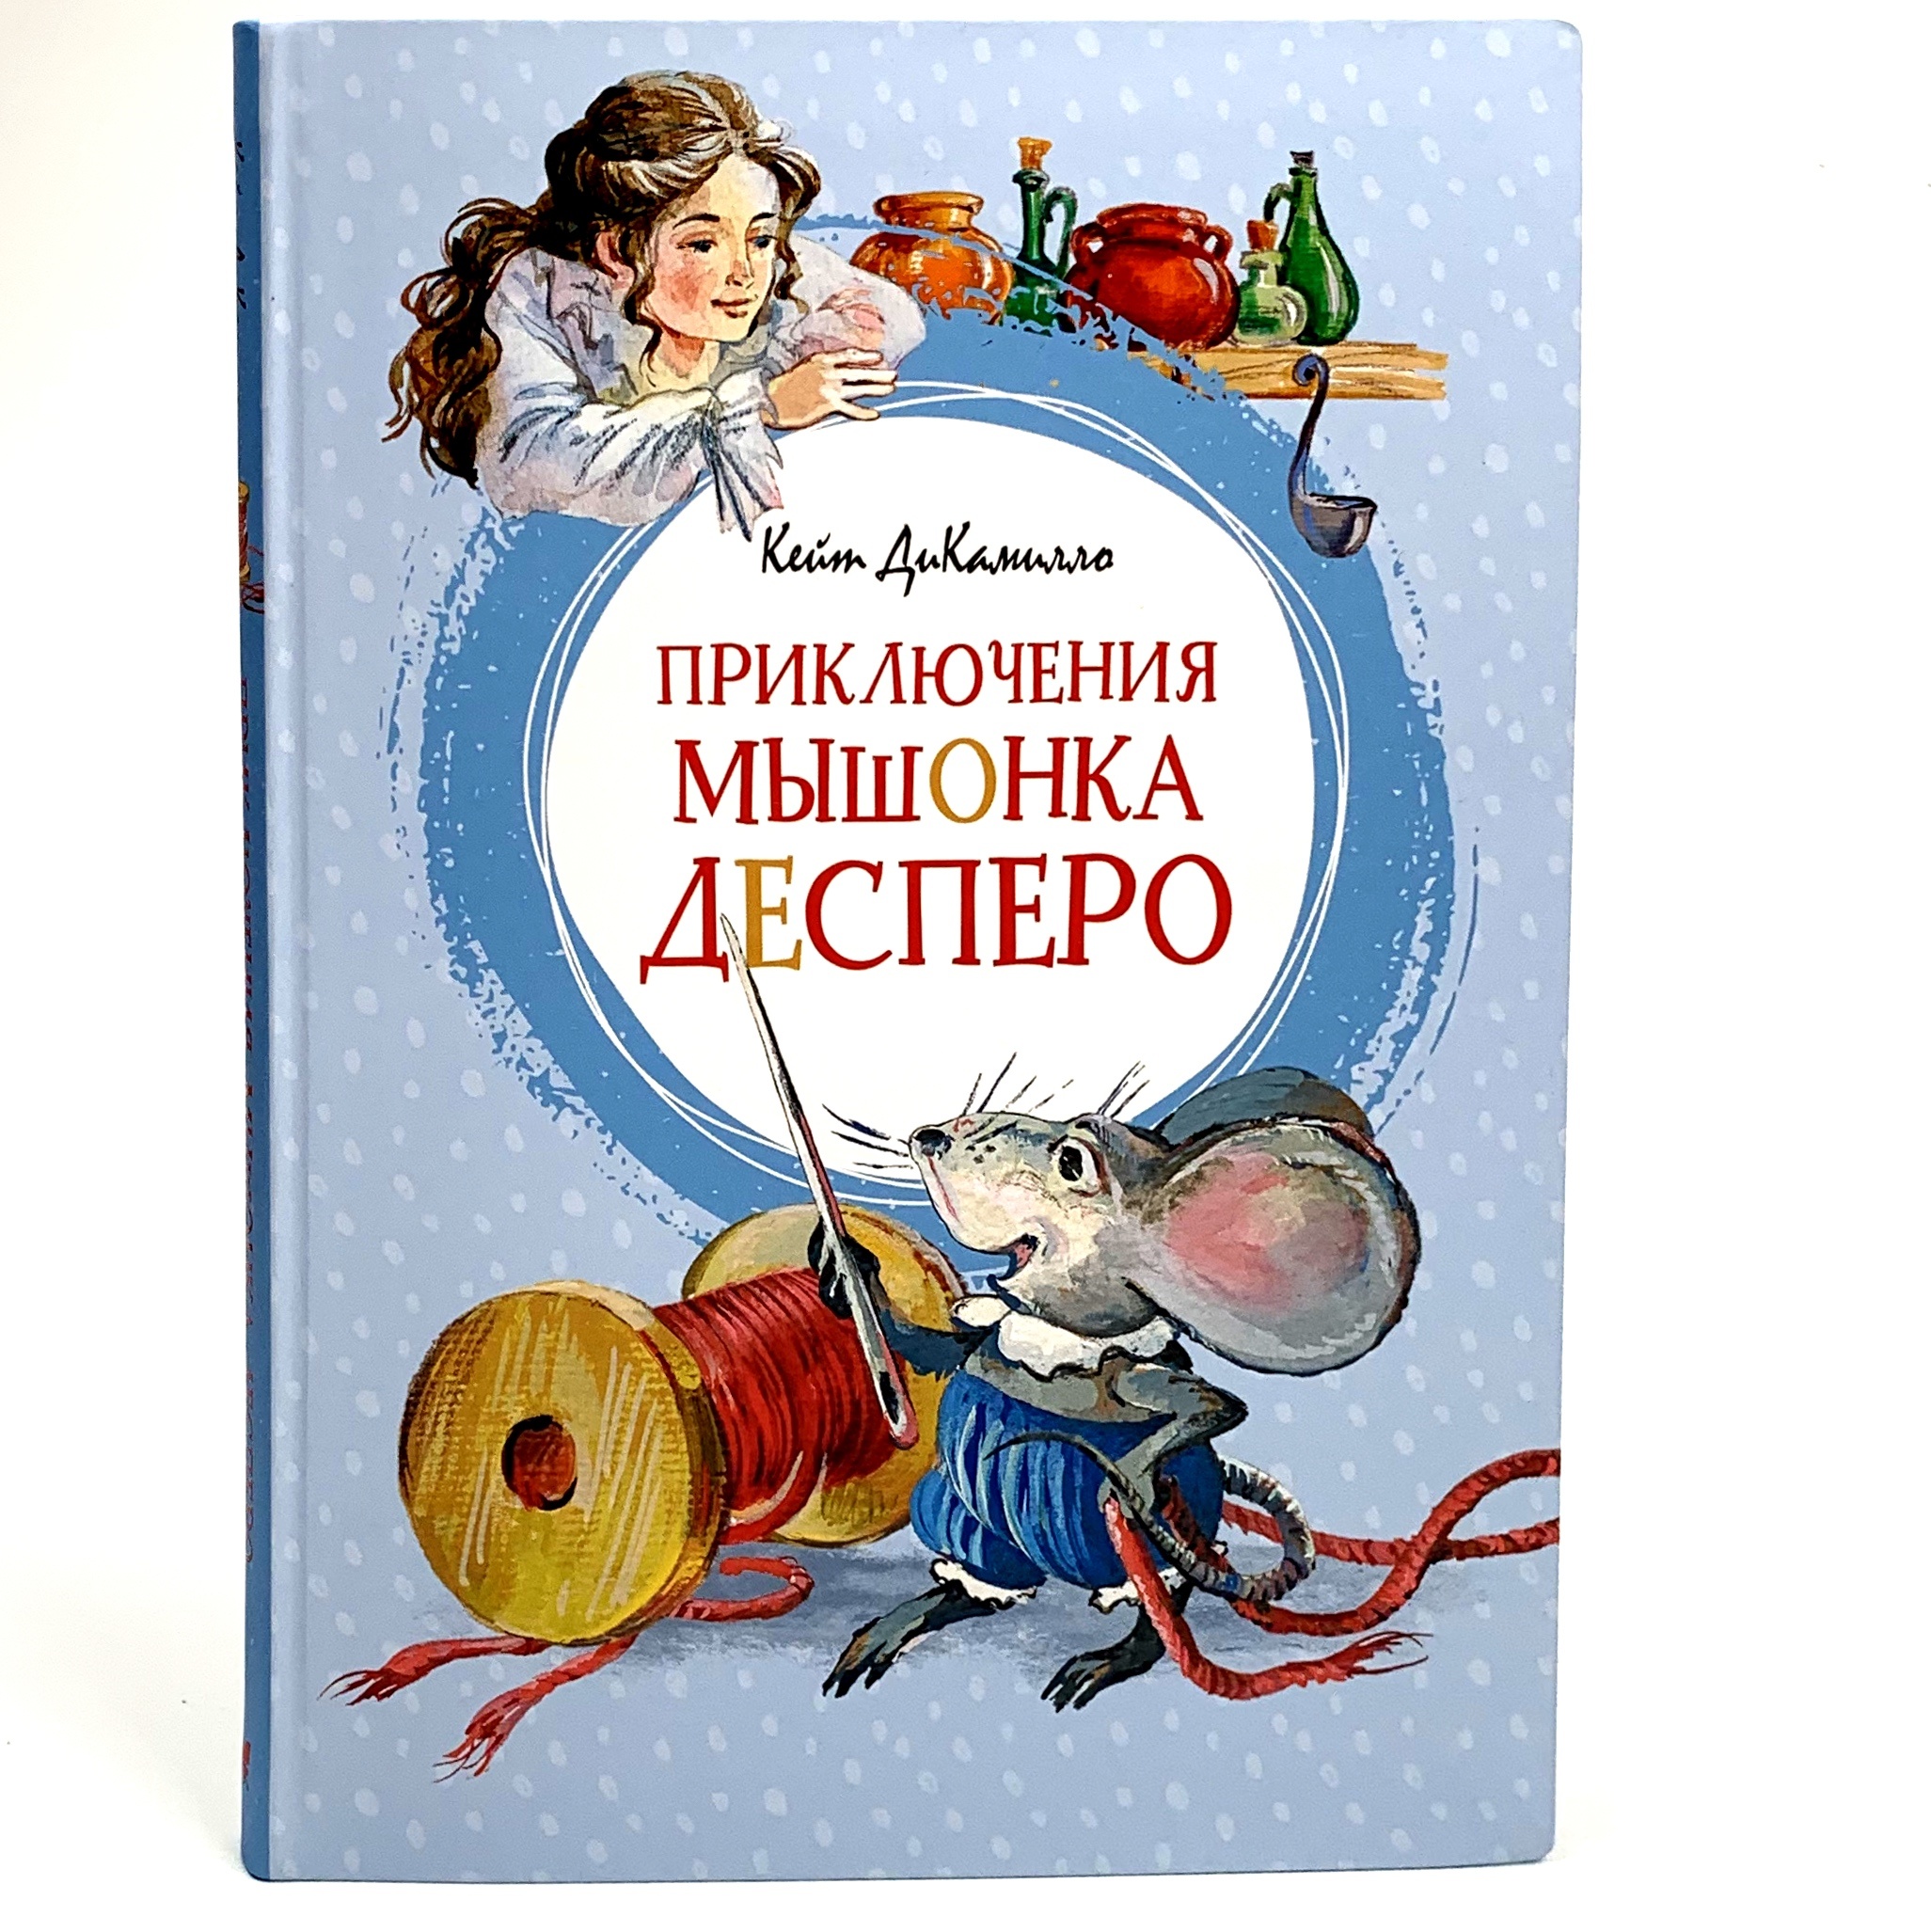 Приключения мышонка Десперо. Автор — Кейт ДиКамилло. 